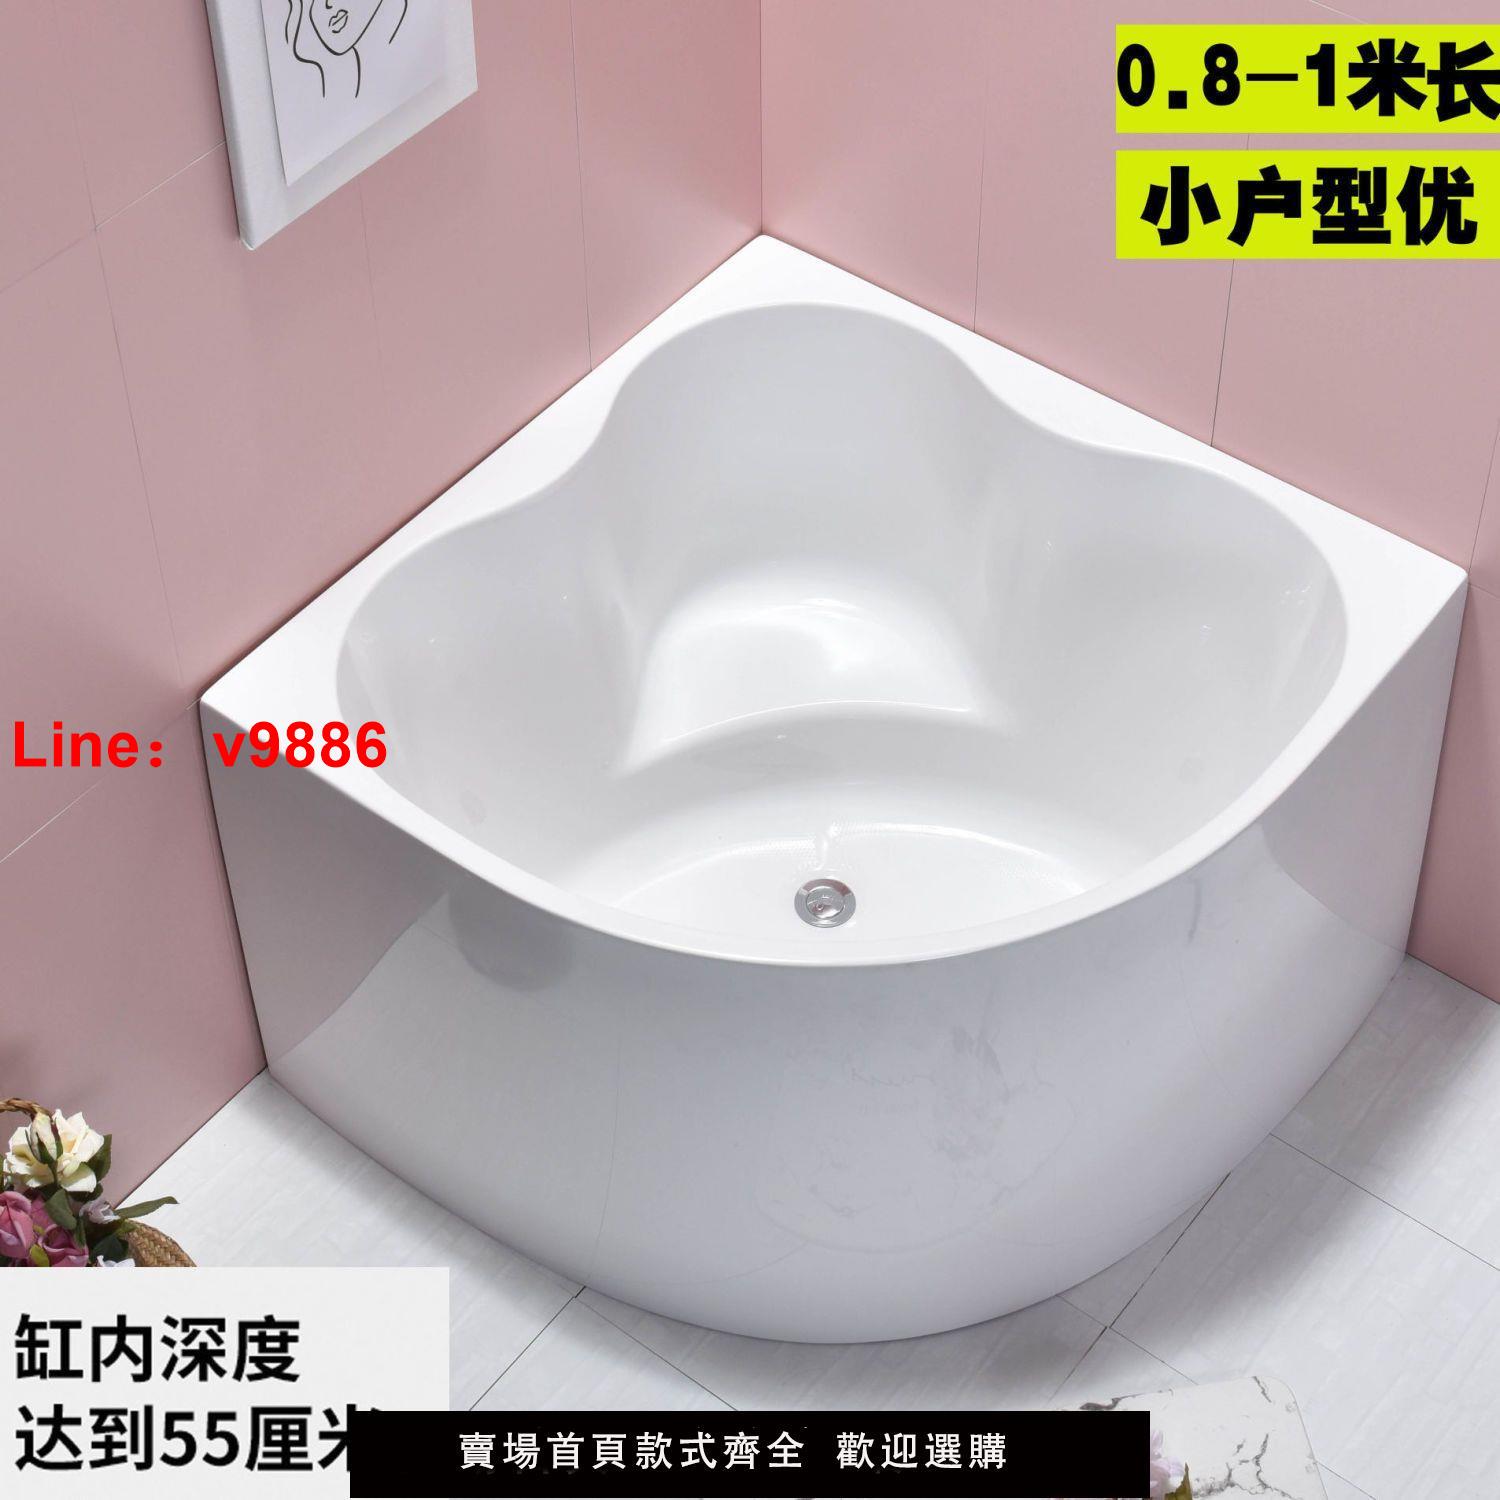 【台灣公司保固】亞克力三角形扇形無縫浴缸迷你家用小戶型超深直角浴盆池0.8米1米